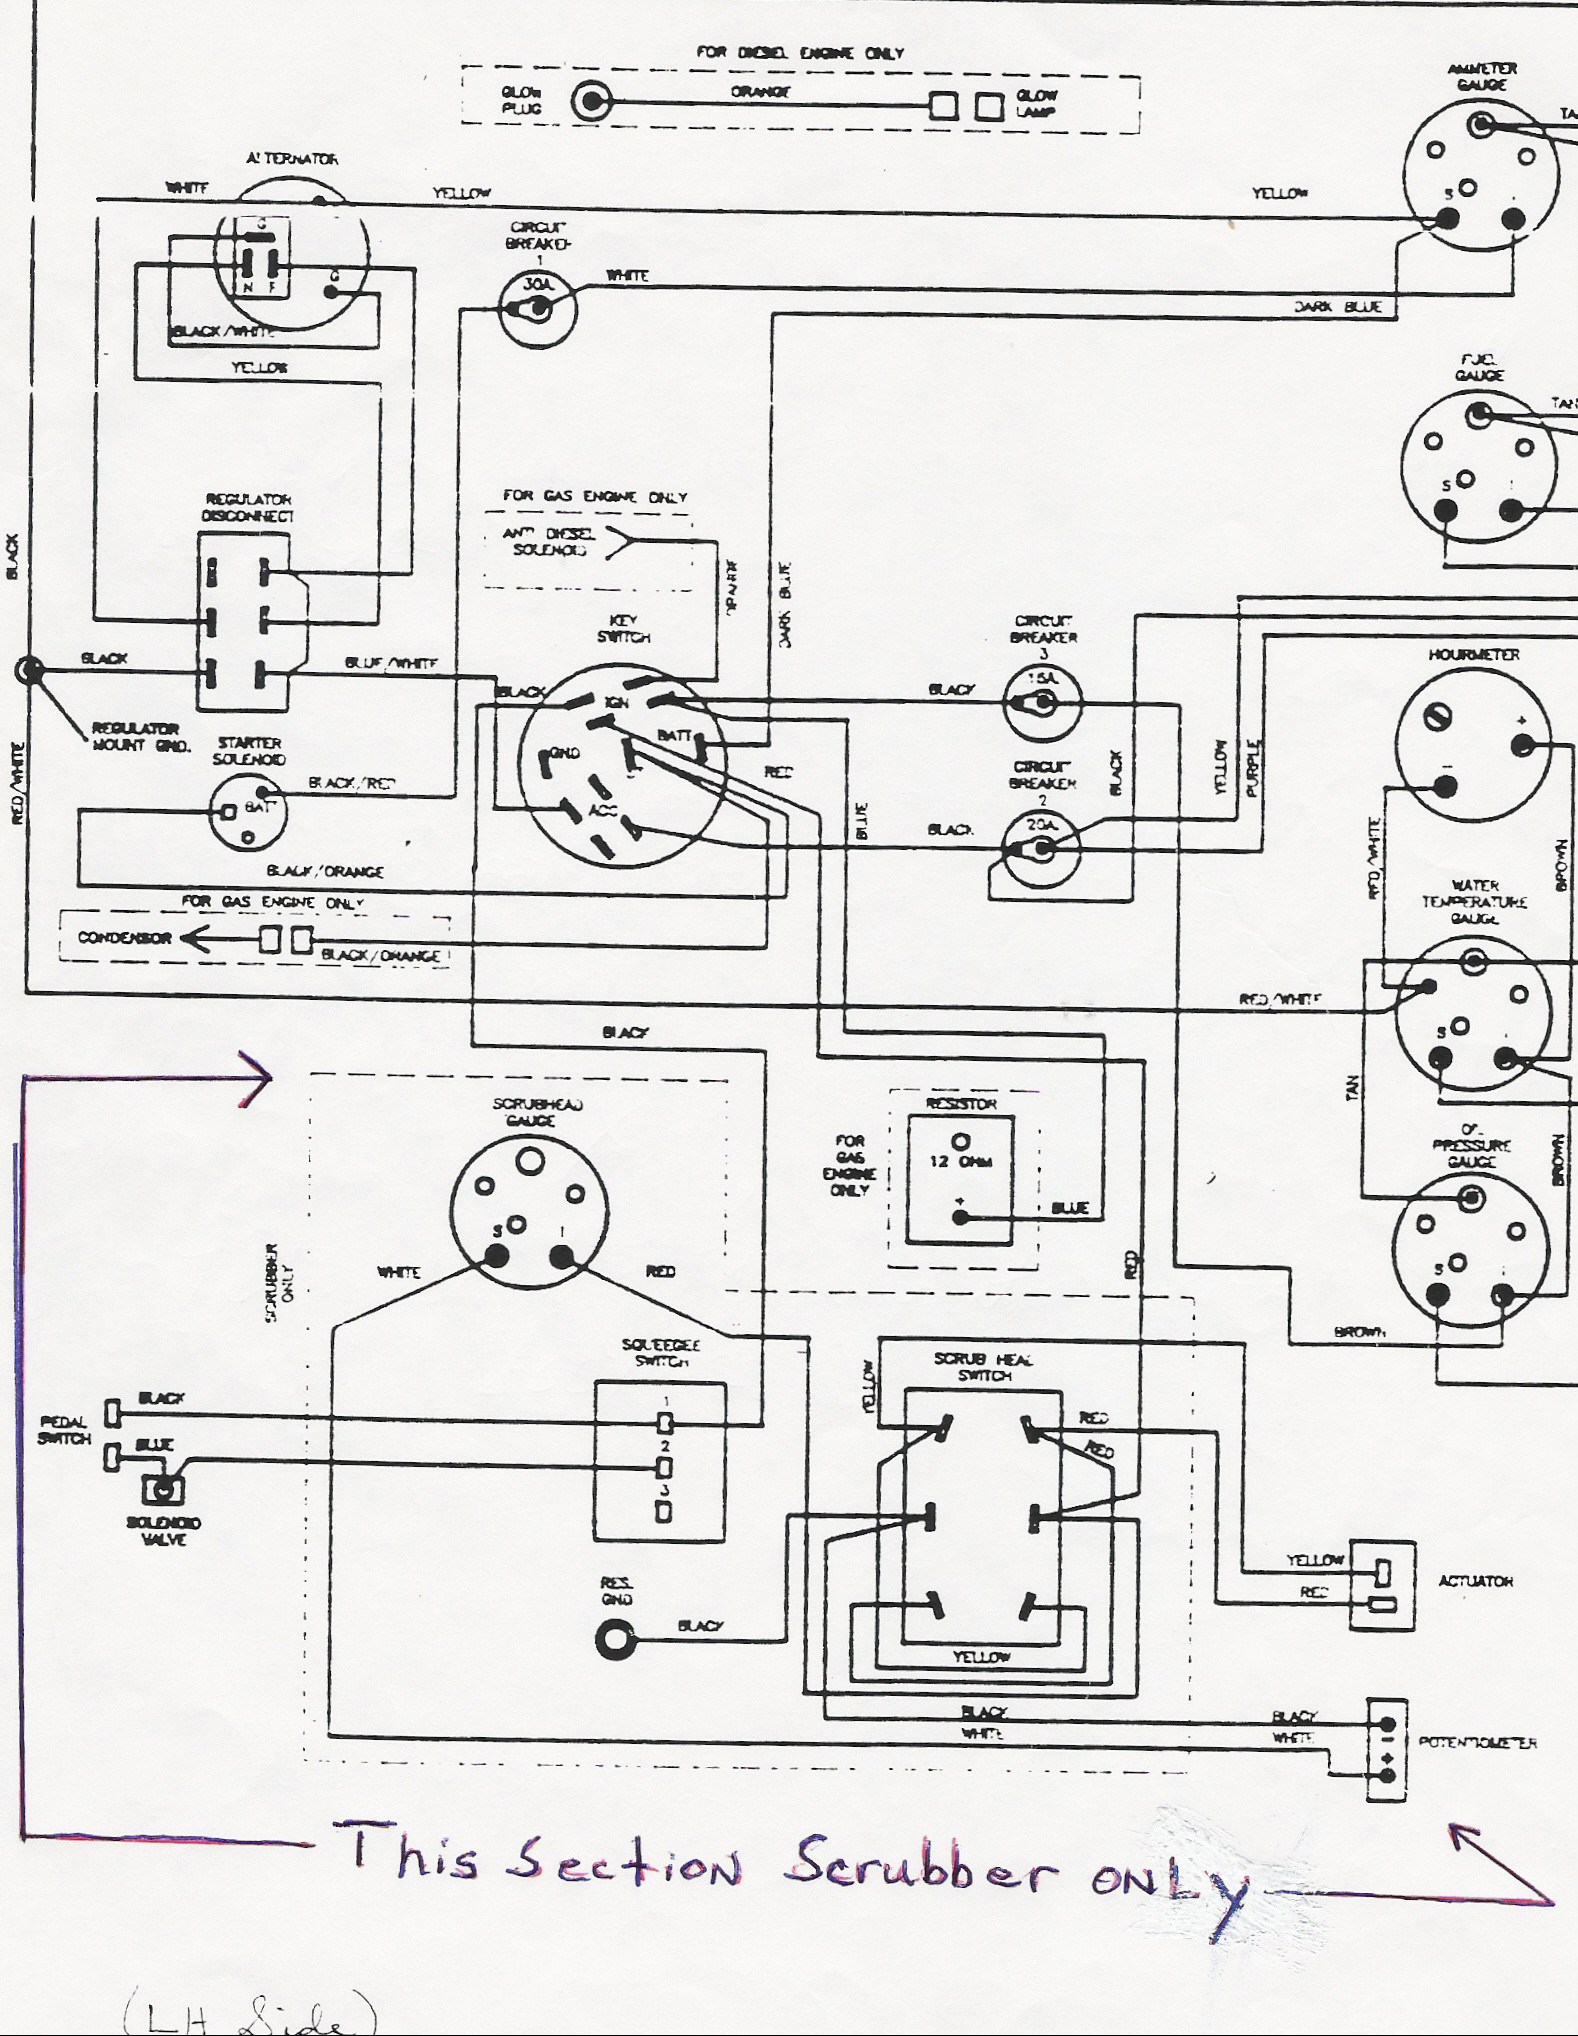 Onan Generator Wiring Diagram 611 1267 - Wiring Diagram Description - Generator Wiring Diagram